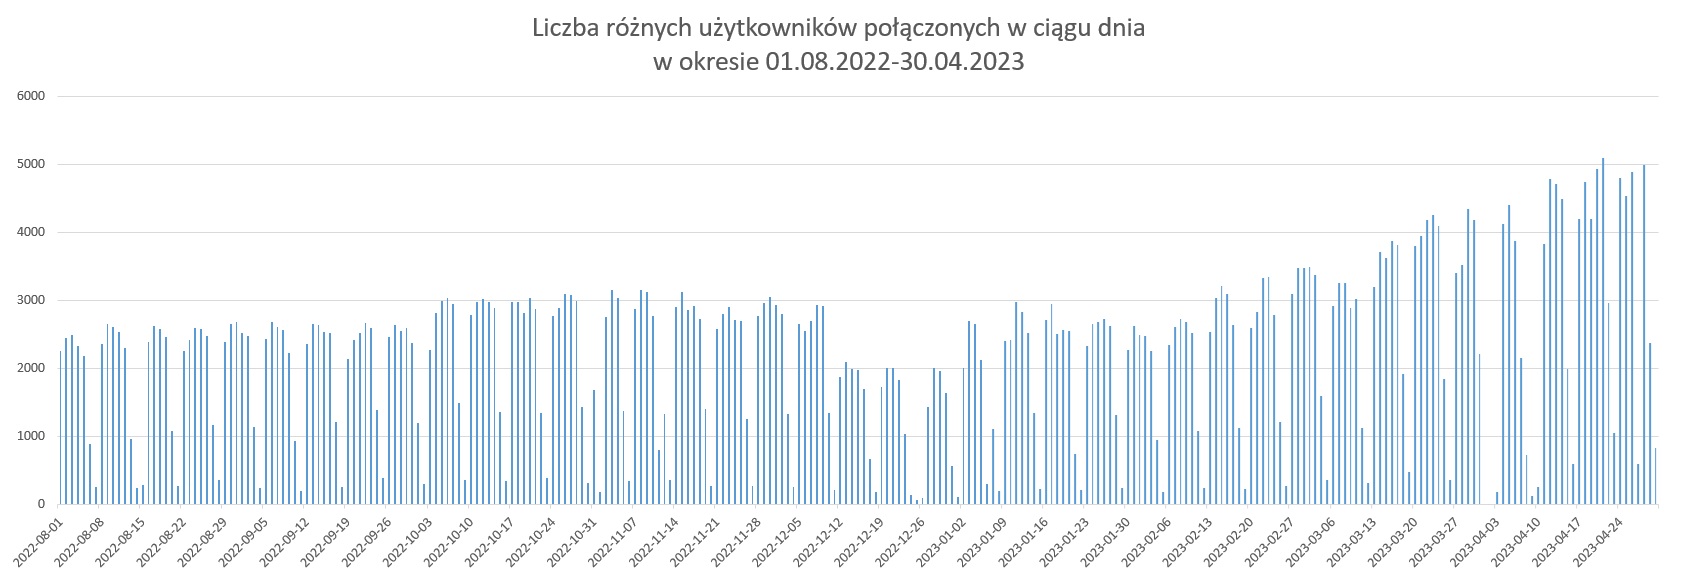 Wykres prezentuje dzienną liczbę użytkowników korzystających z systemu ASG-EUPOS w okresie 01.08.2022-30.04.2023